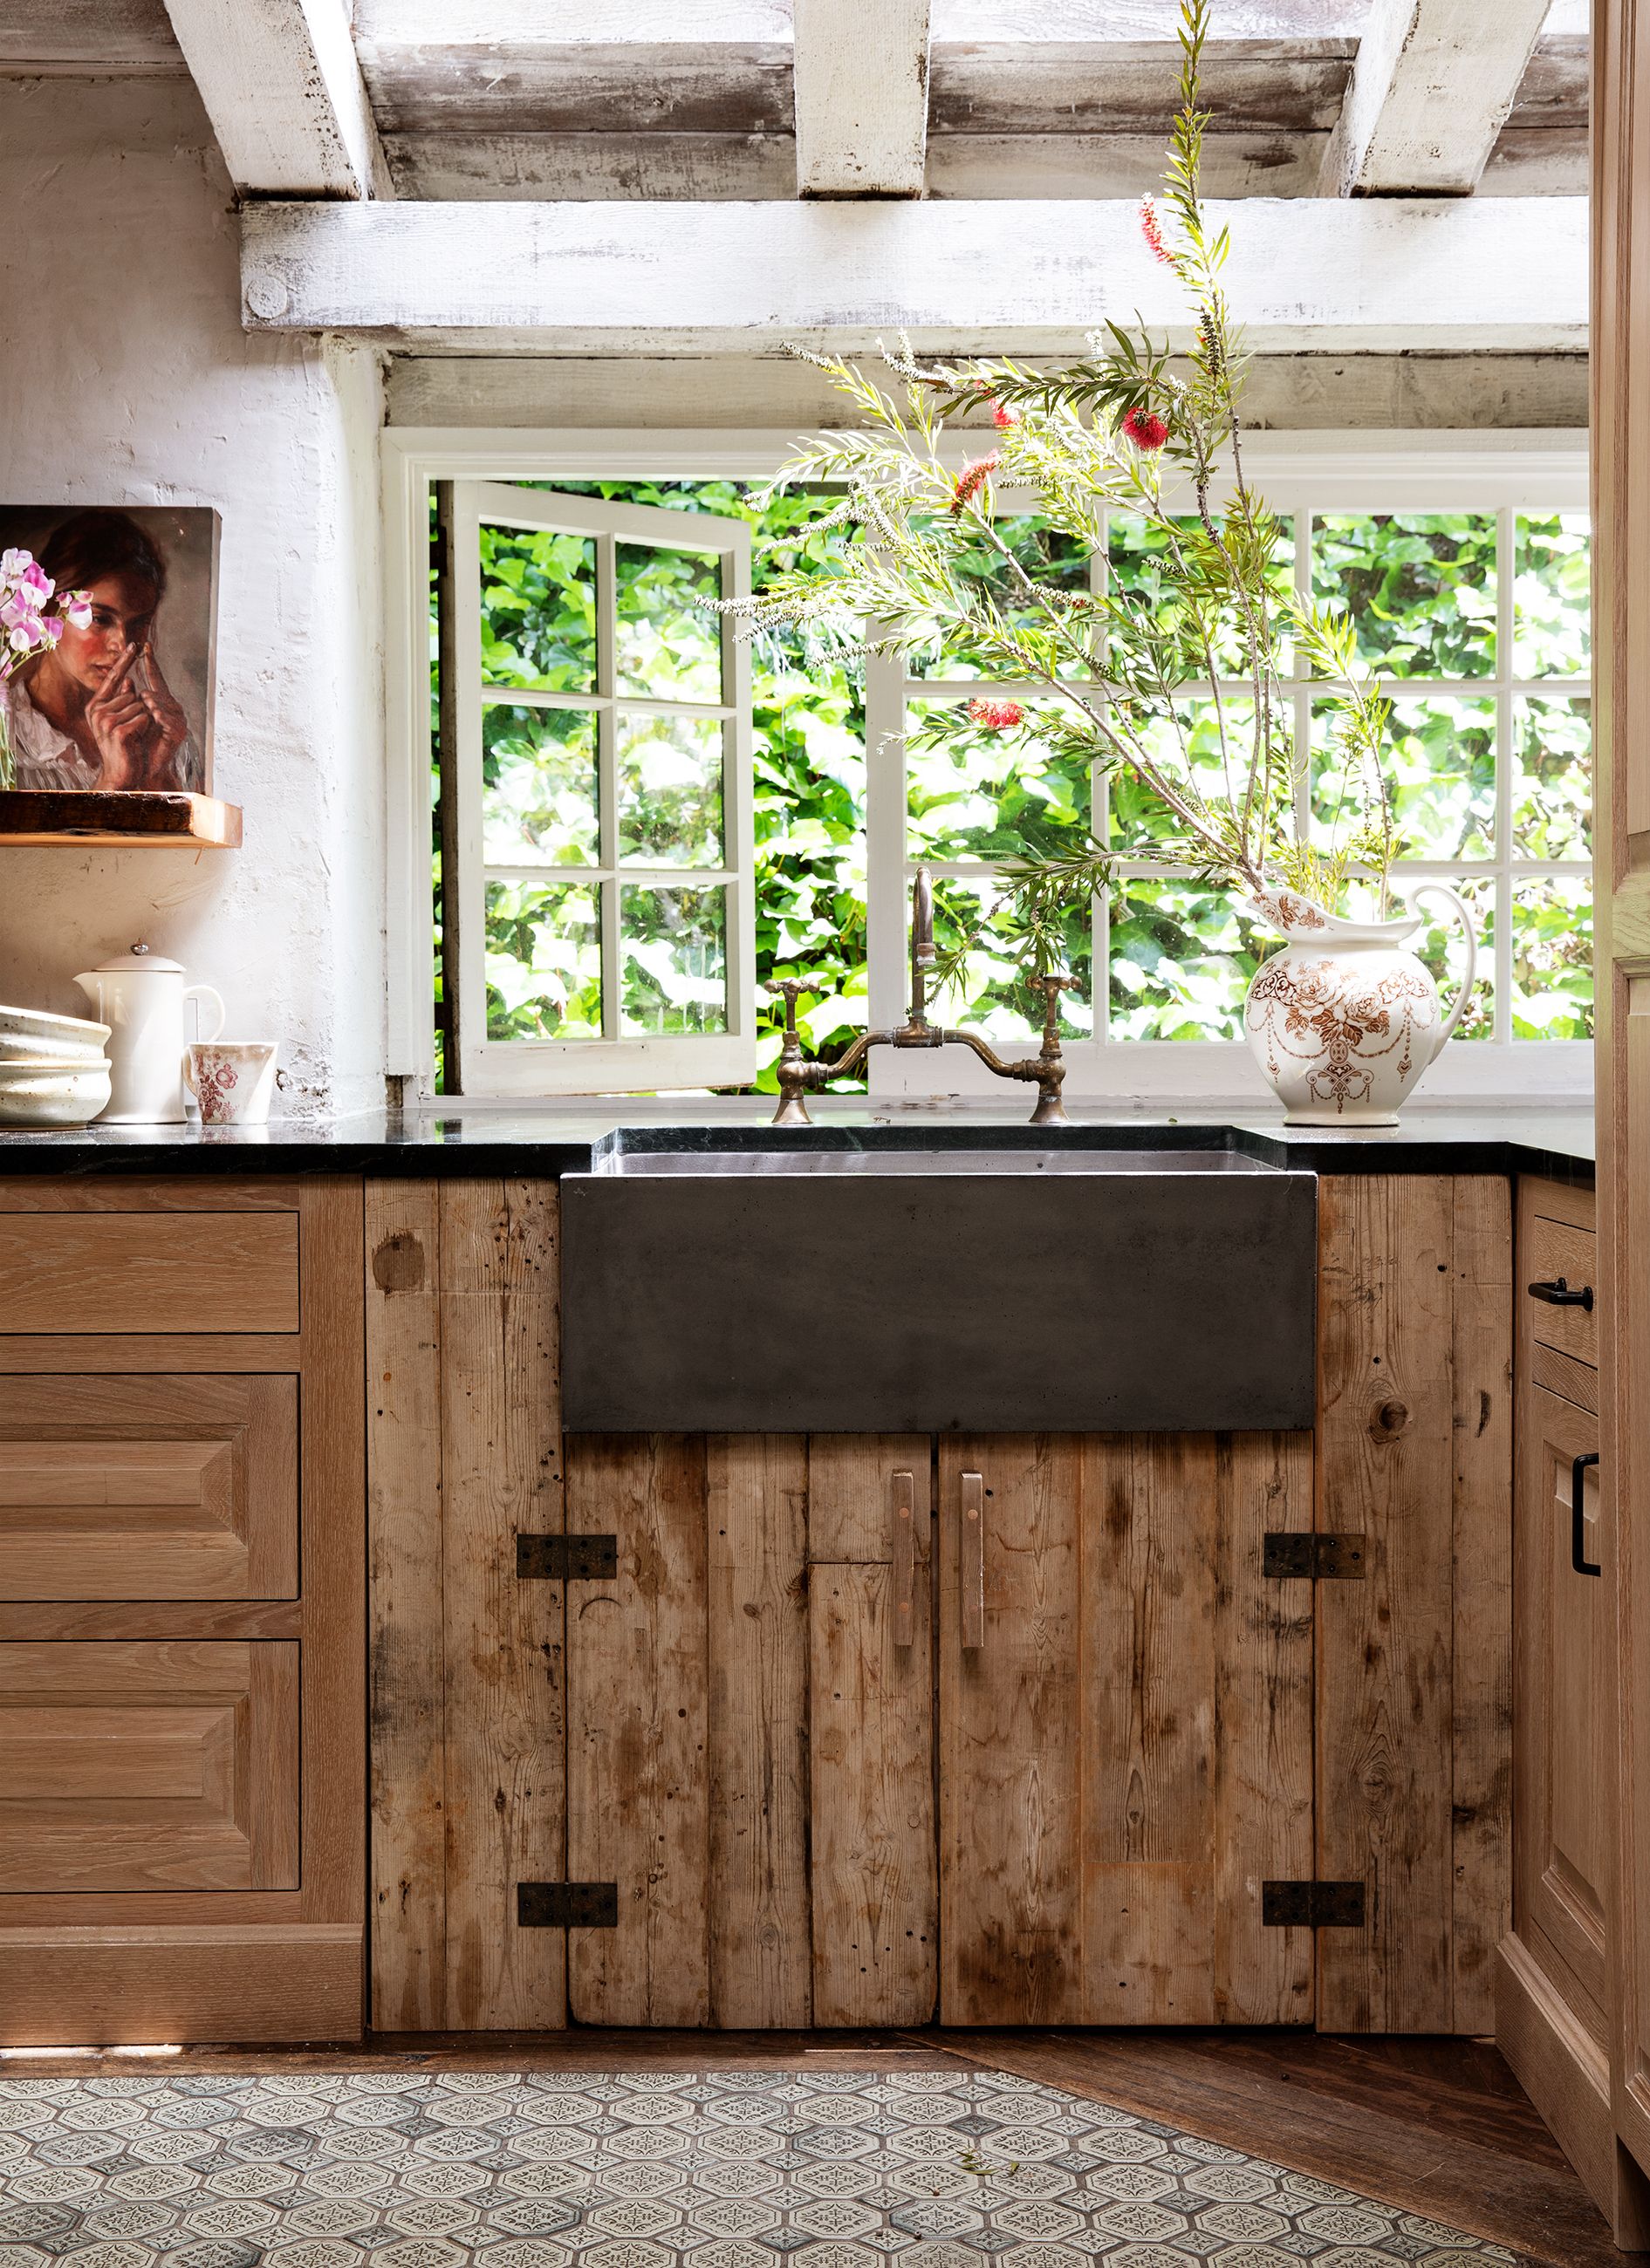 18 Best Kitchen Ideas   Kitchen Decor and Design Photos